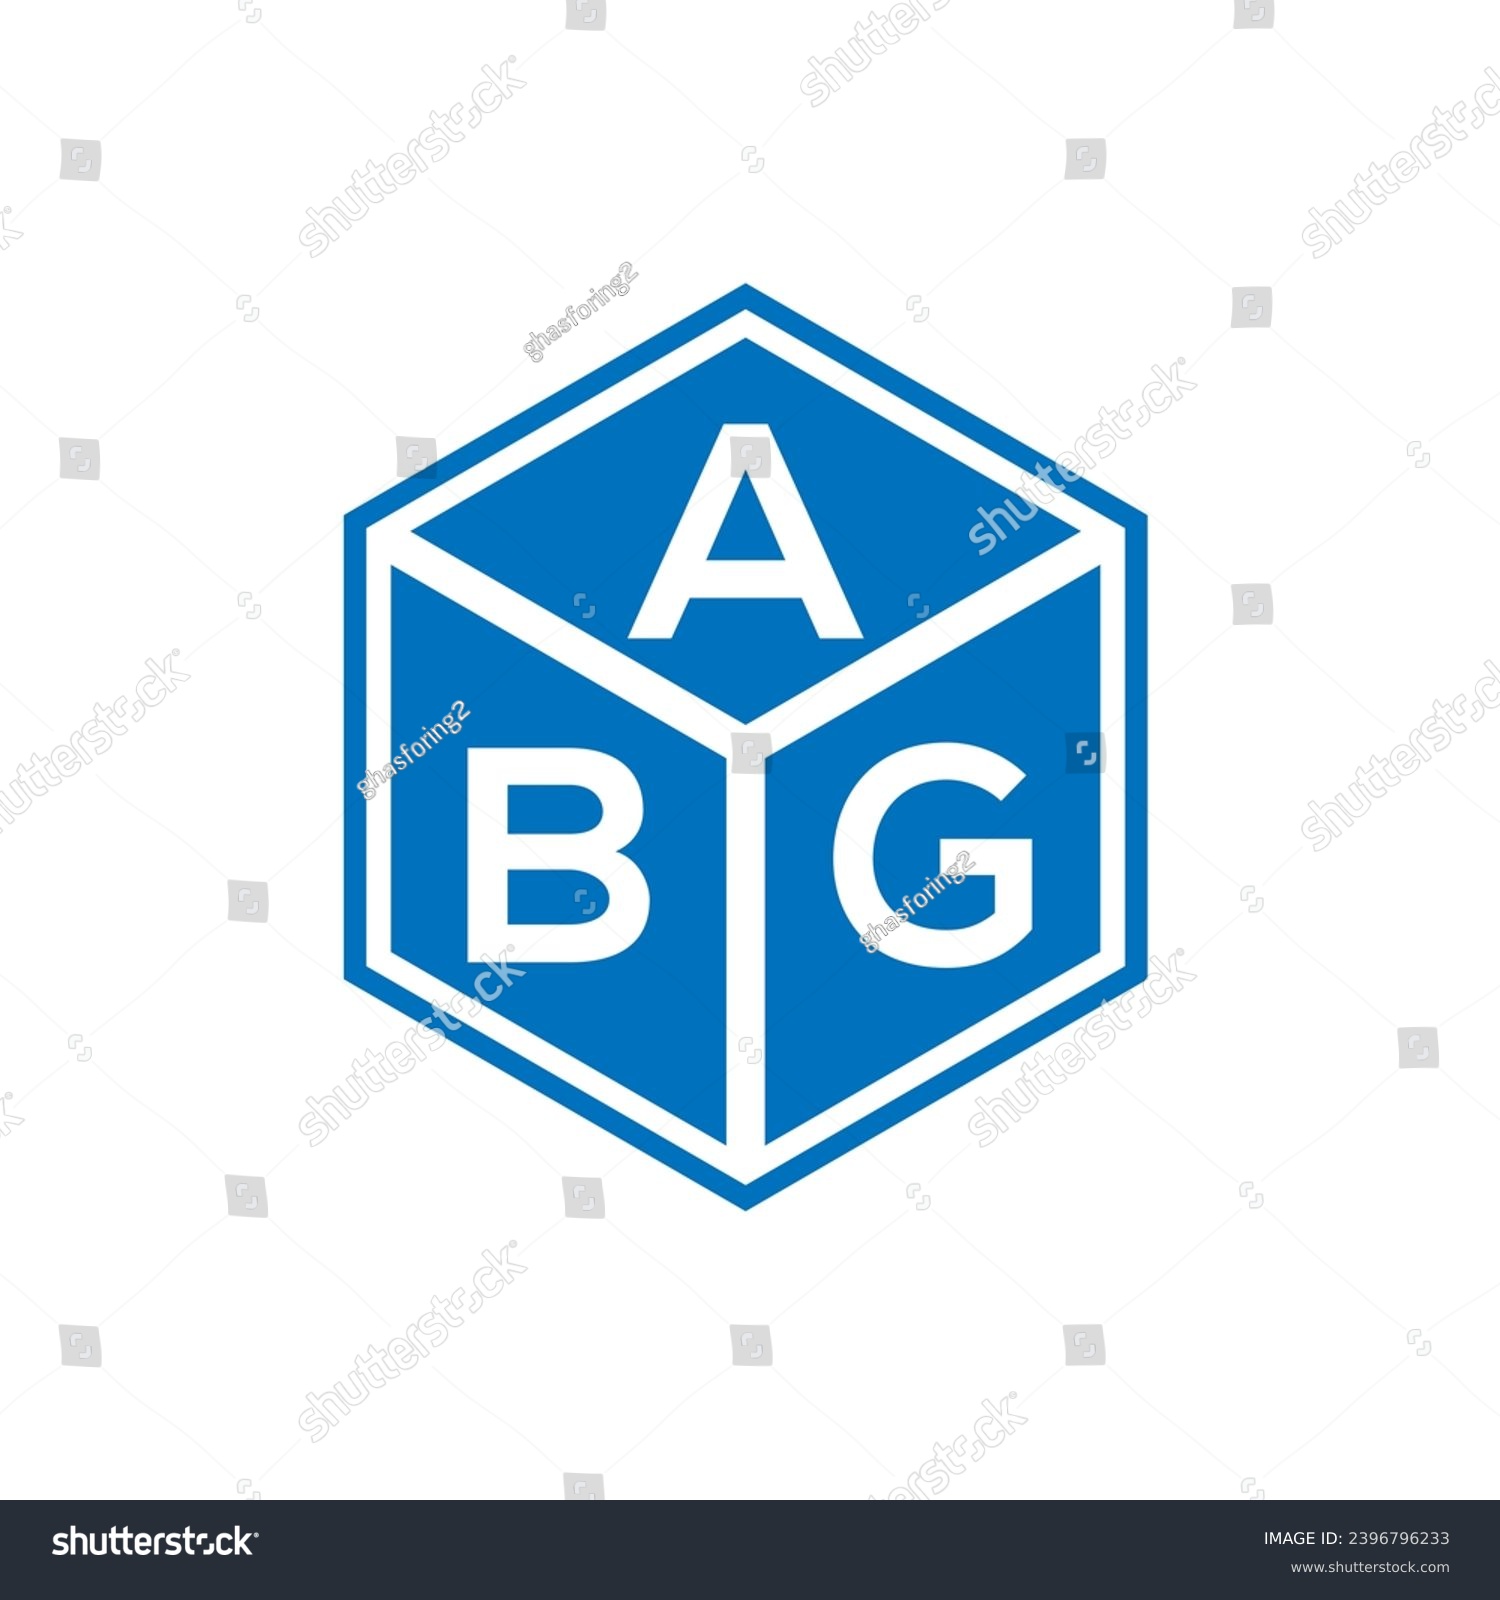 SVG of ABG letter logo design on black background. ABG creative initials letter logo concept. ABG letter design.
 svg